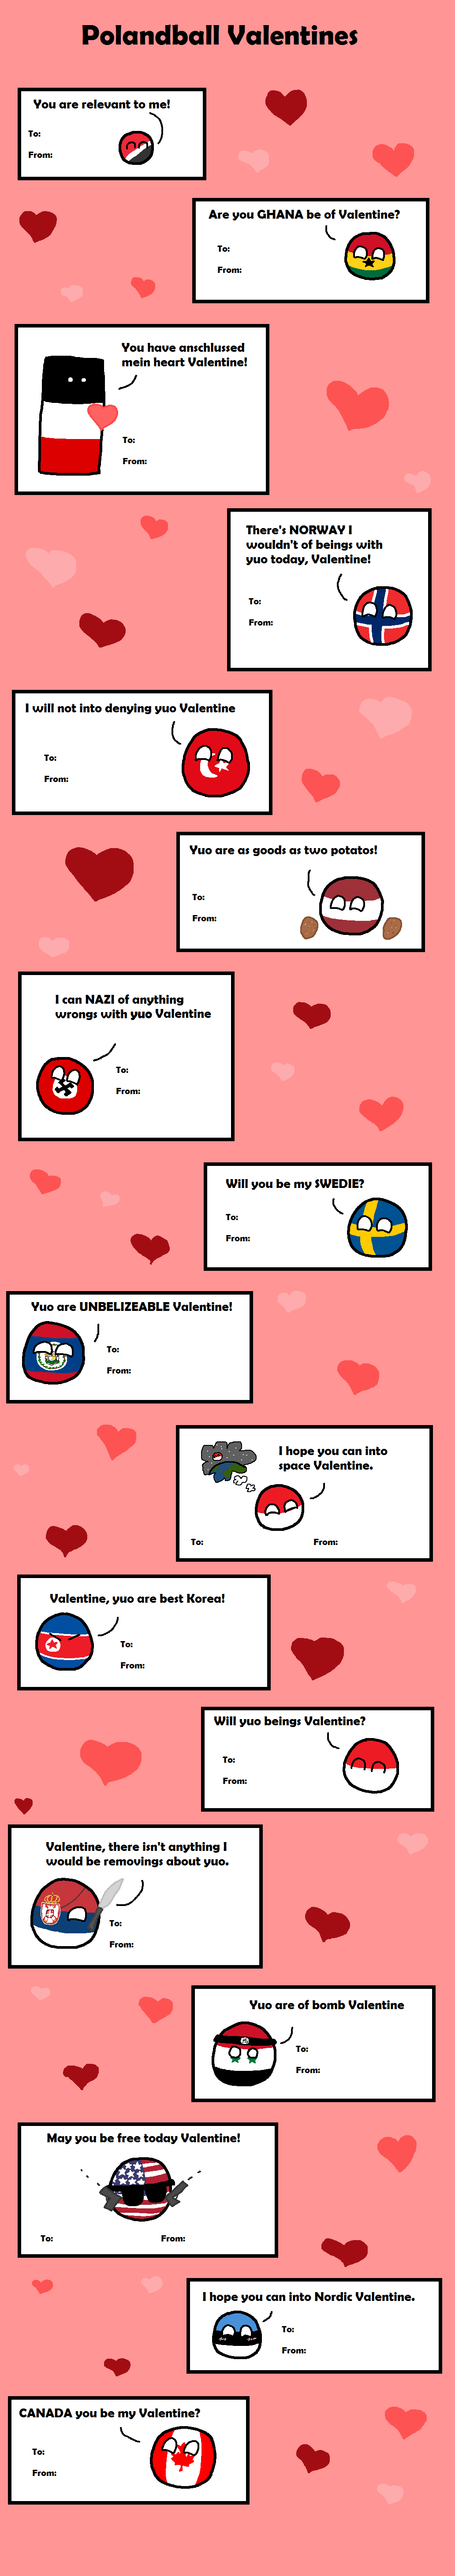 Polandball Valentines